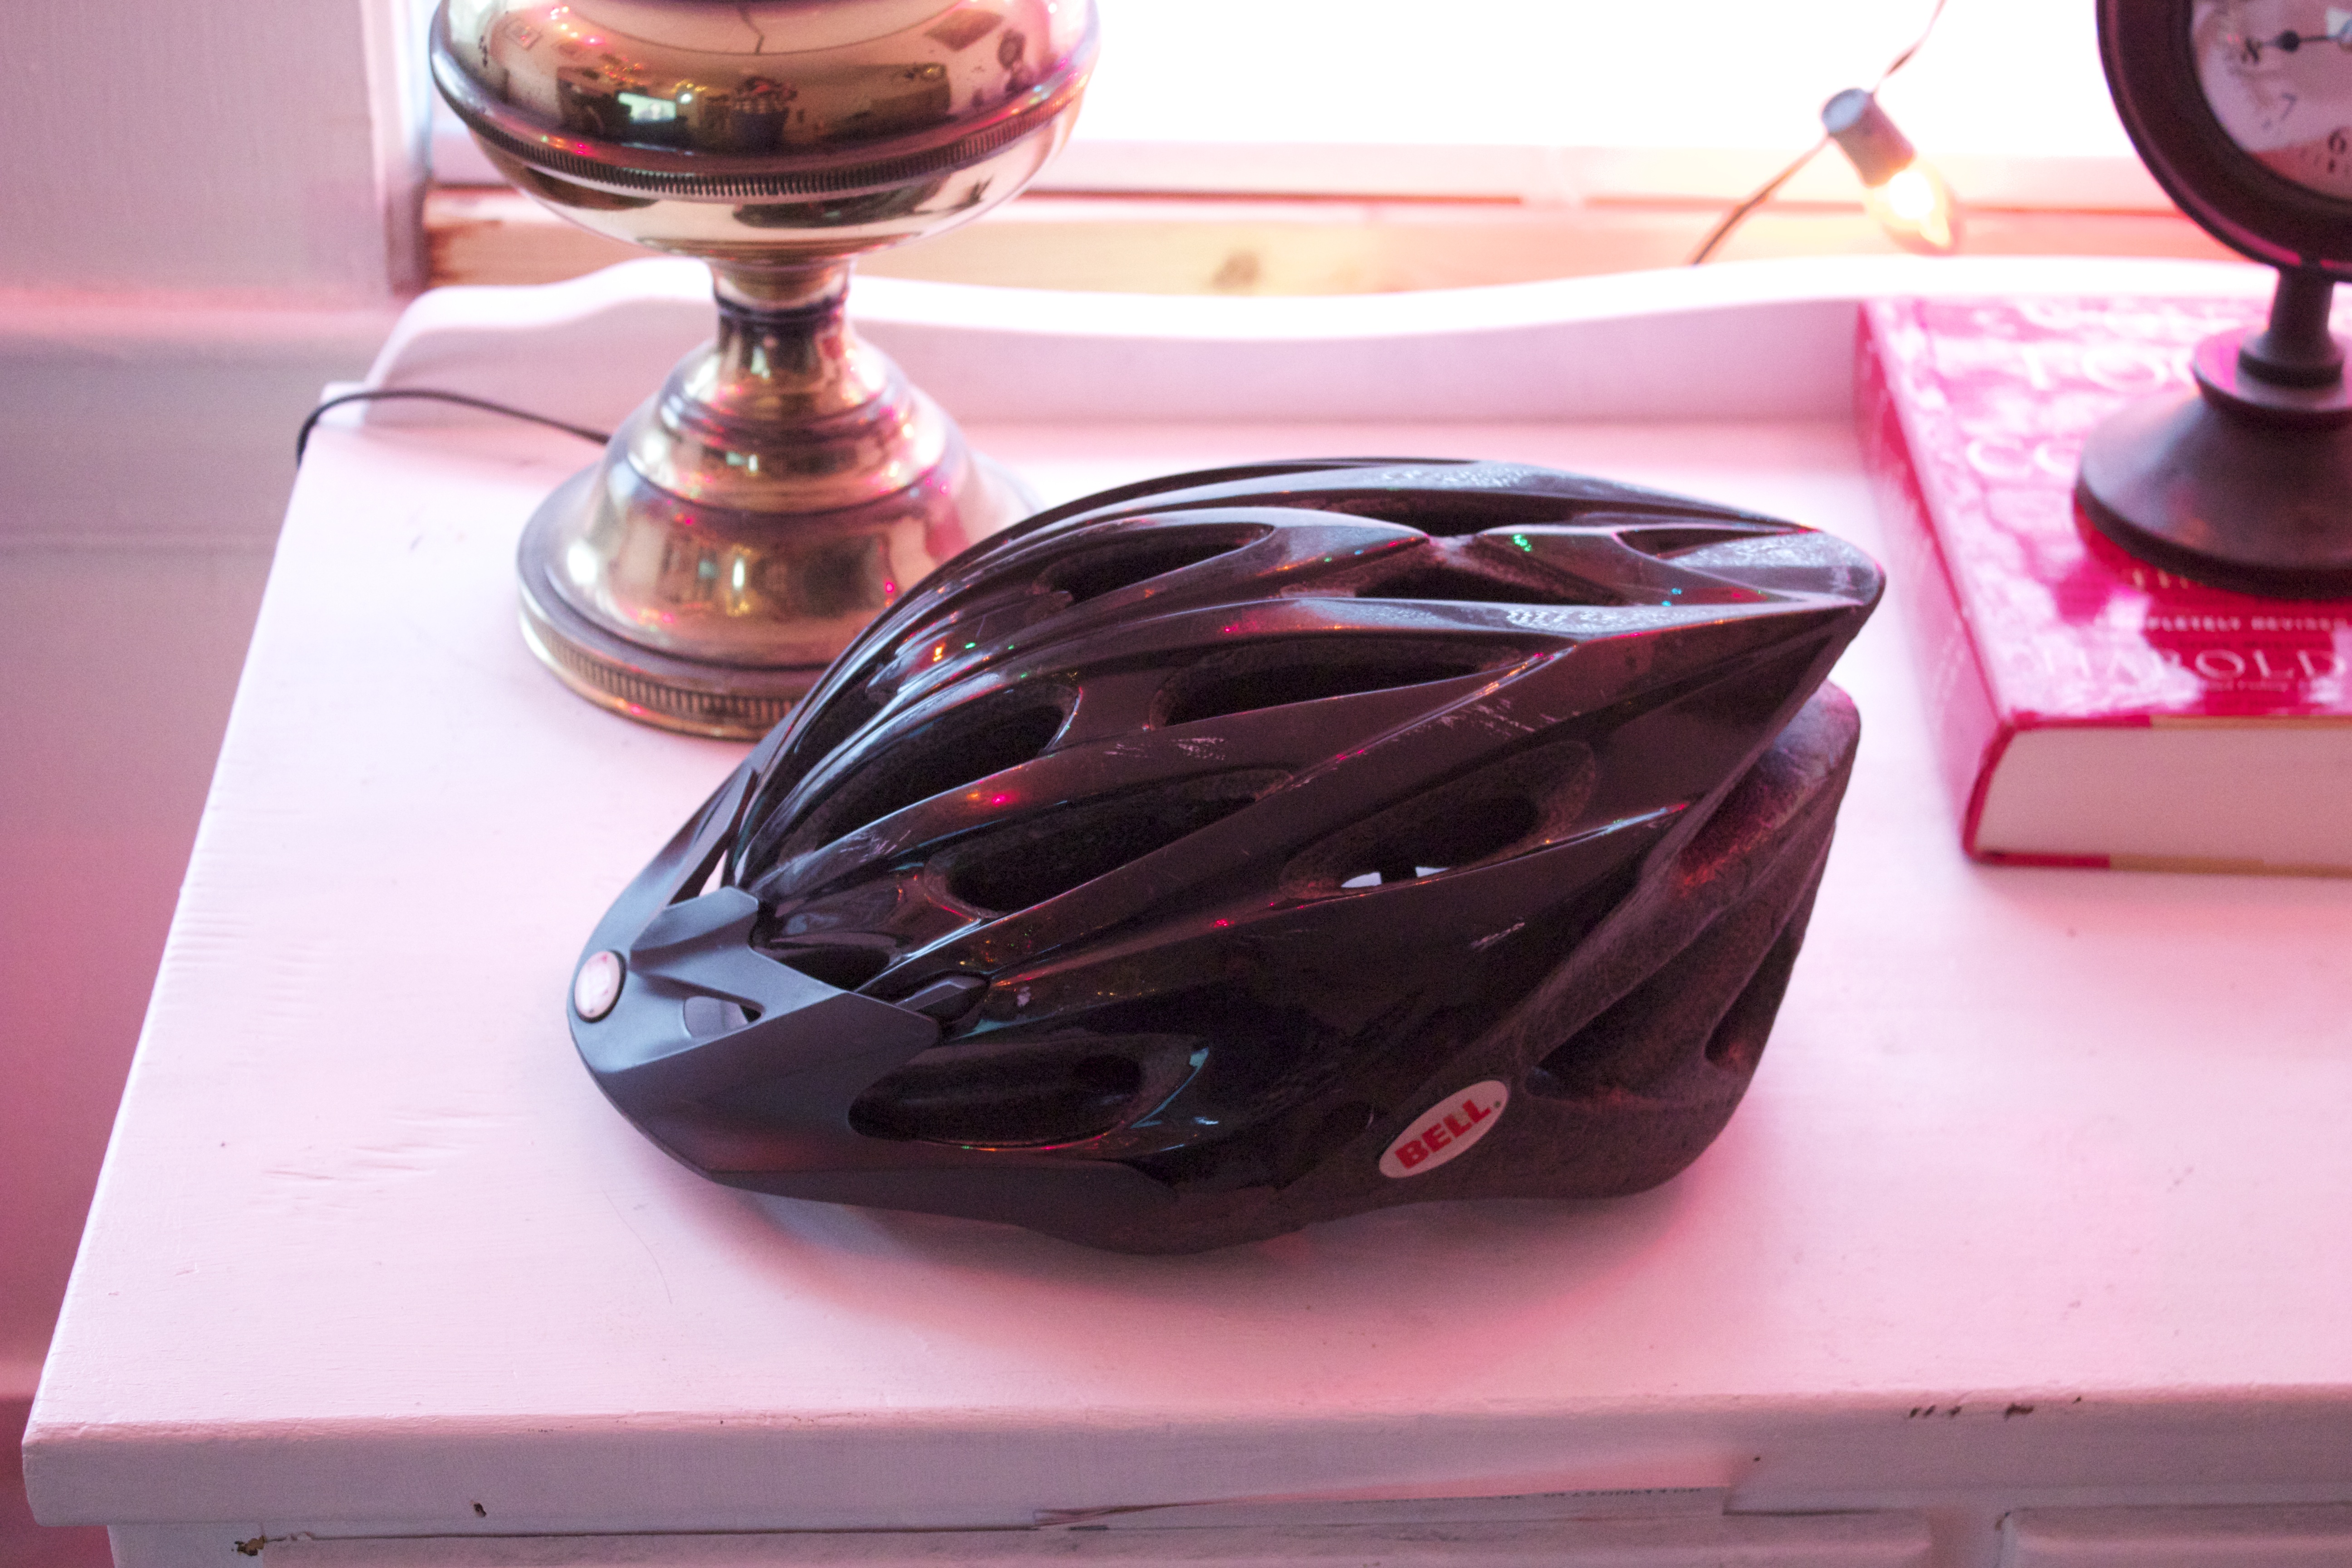 choosing a bike helmet